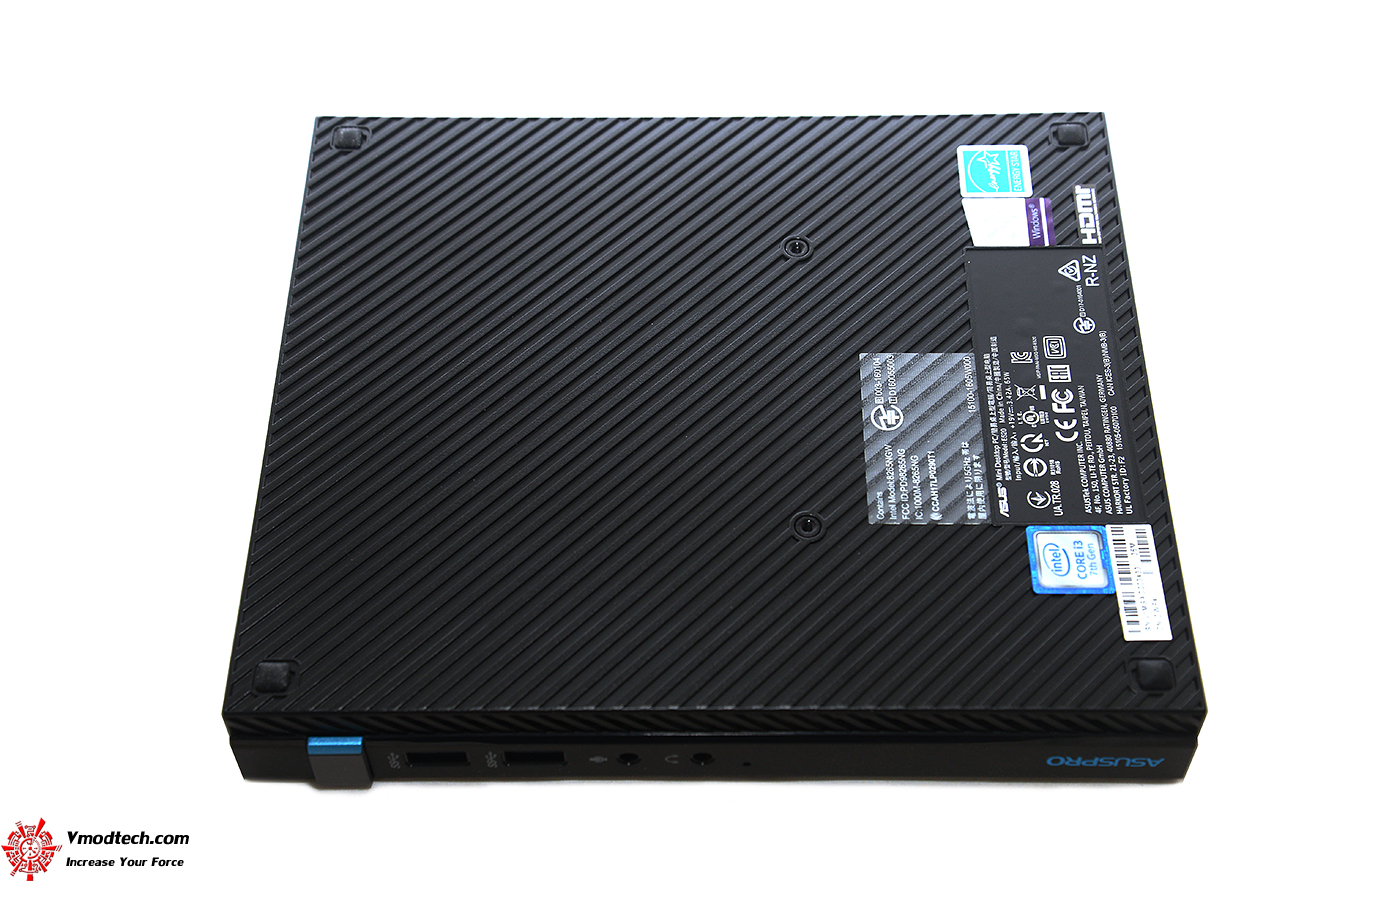 dsc 9526 ASUSPRO E520 B123Z/CSM Ultra Slim Mini PC Review 